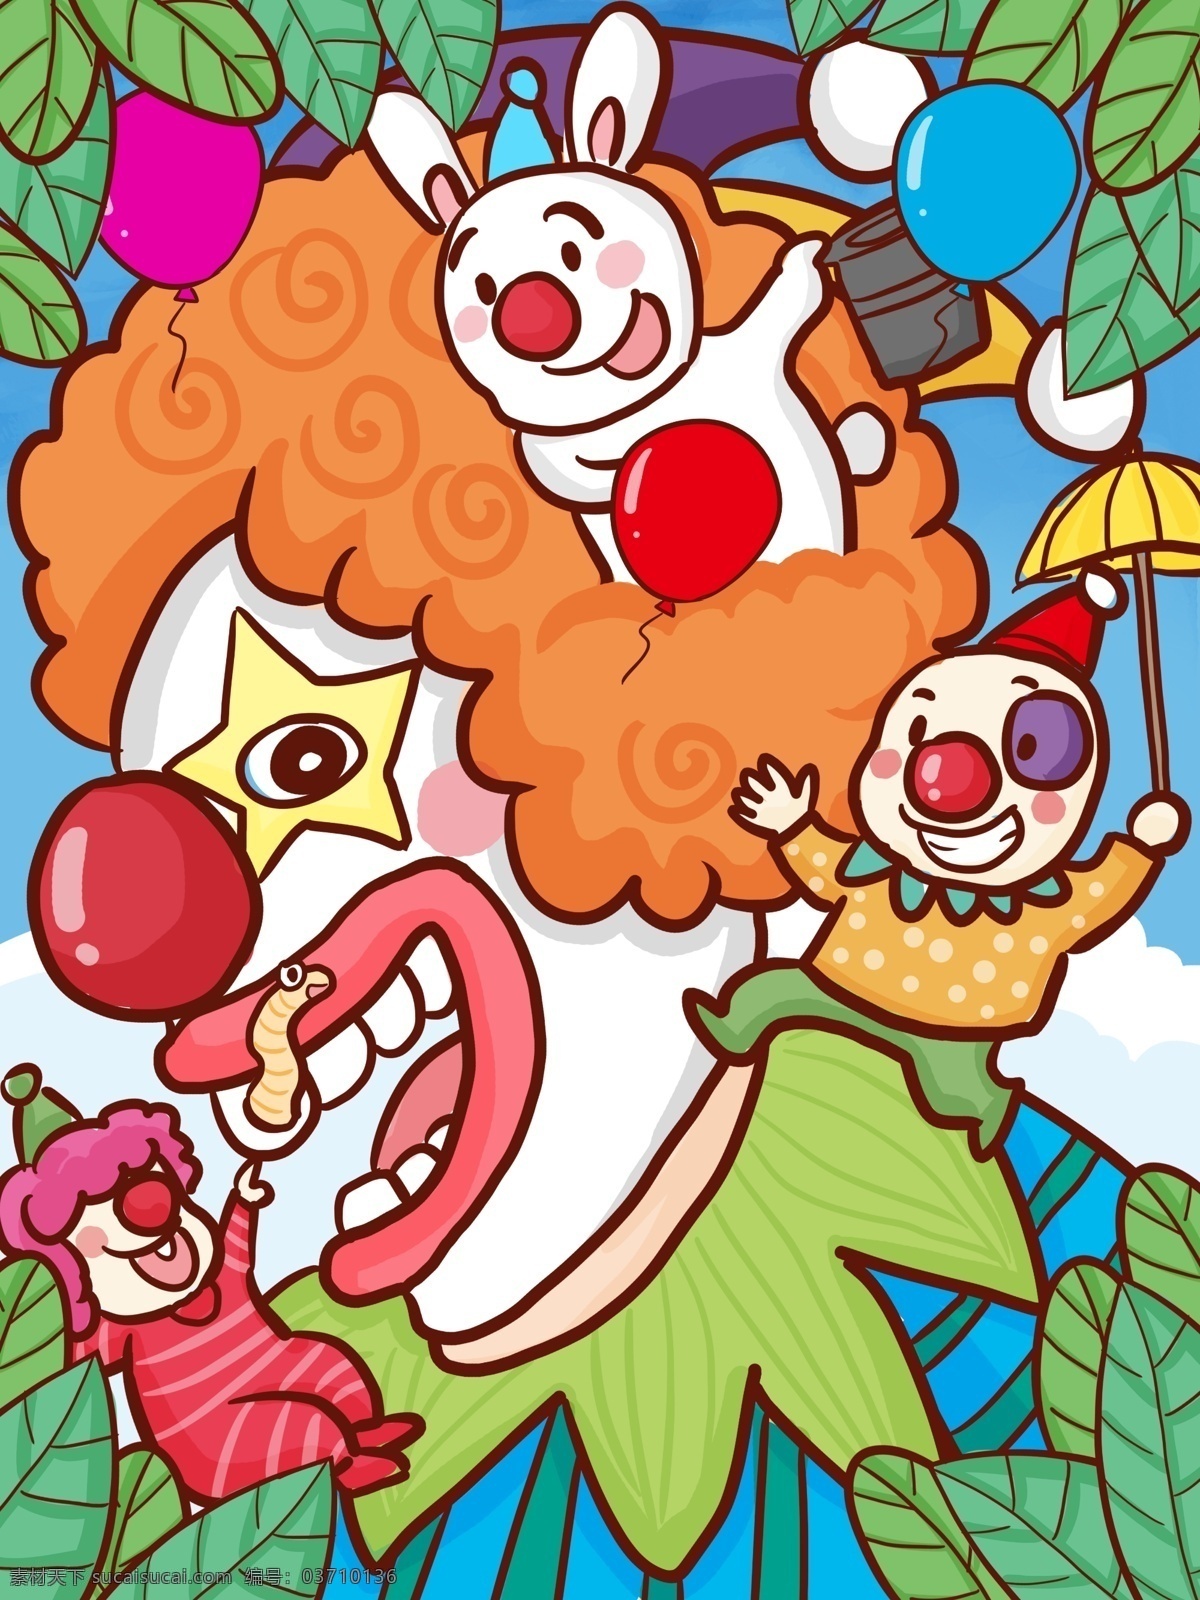 愚人节 小丑 朋友 人们 表演 逗乐 卡通 4月1日 愚人 开心 可爱 白兔